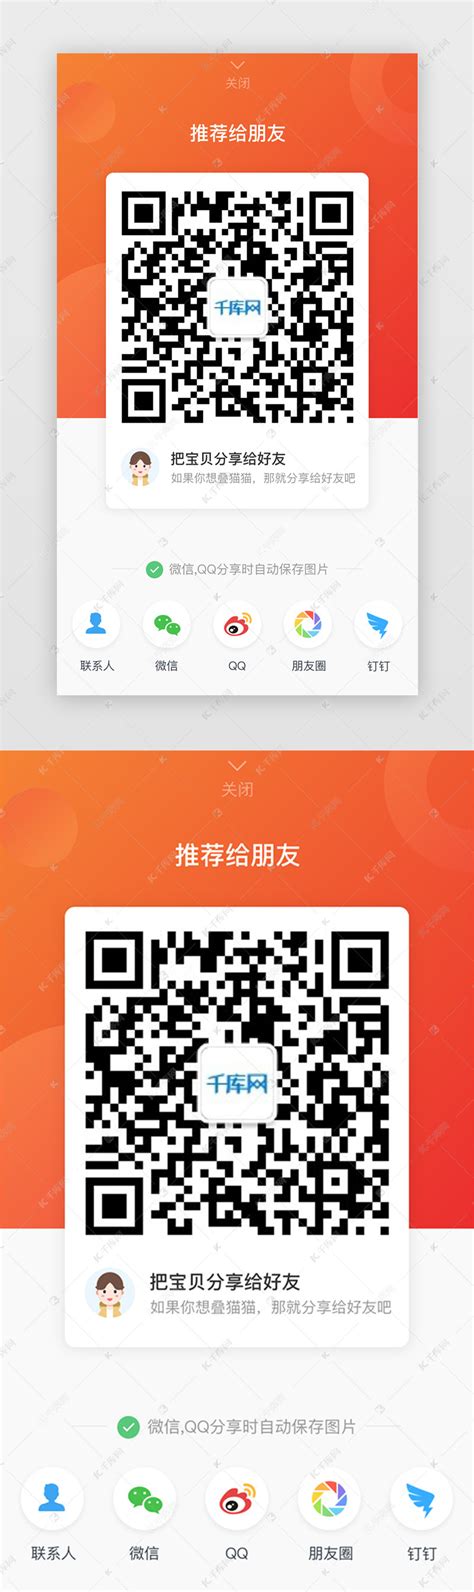 千图网-免费设计图片素材网站-正版图库免费设计素材中国 - CeoMax主题